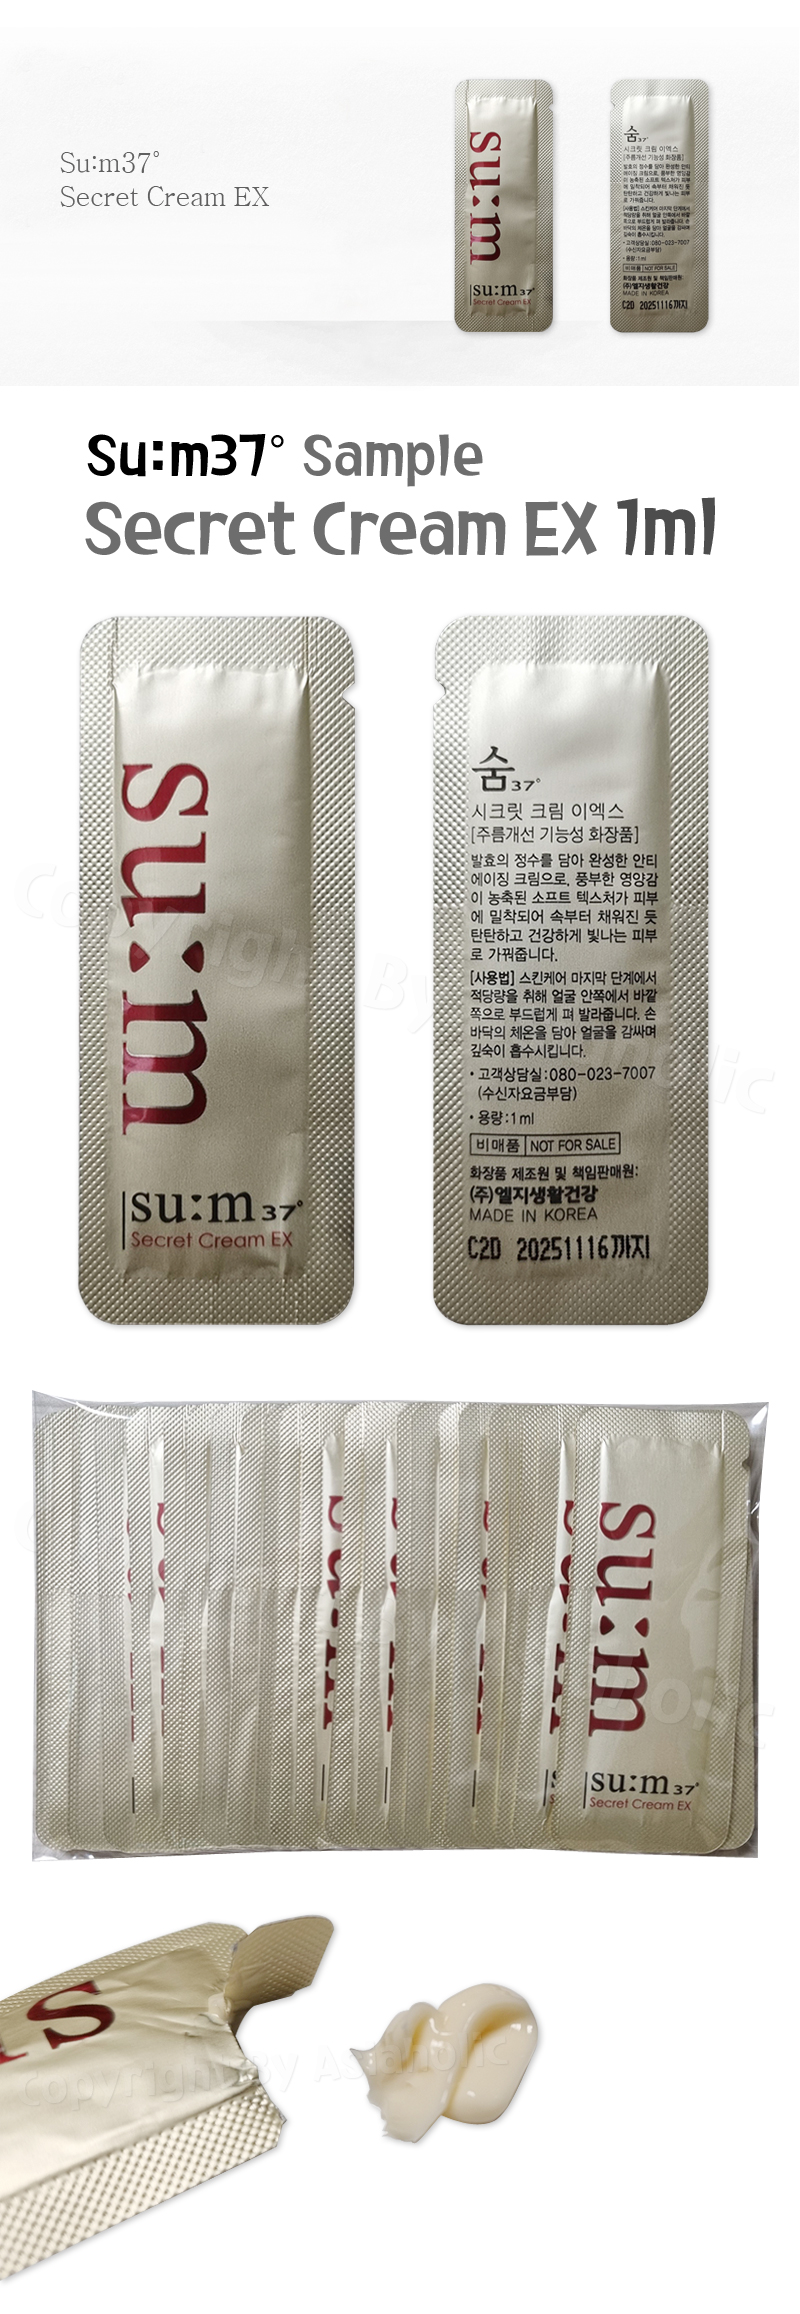 SU:M37 Secret Cream EX 1ml (10pcs ~ 150pcs) Sample Sum37 Newest Version